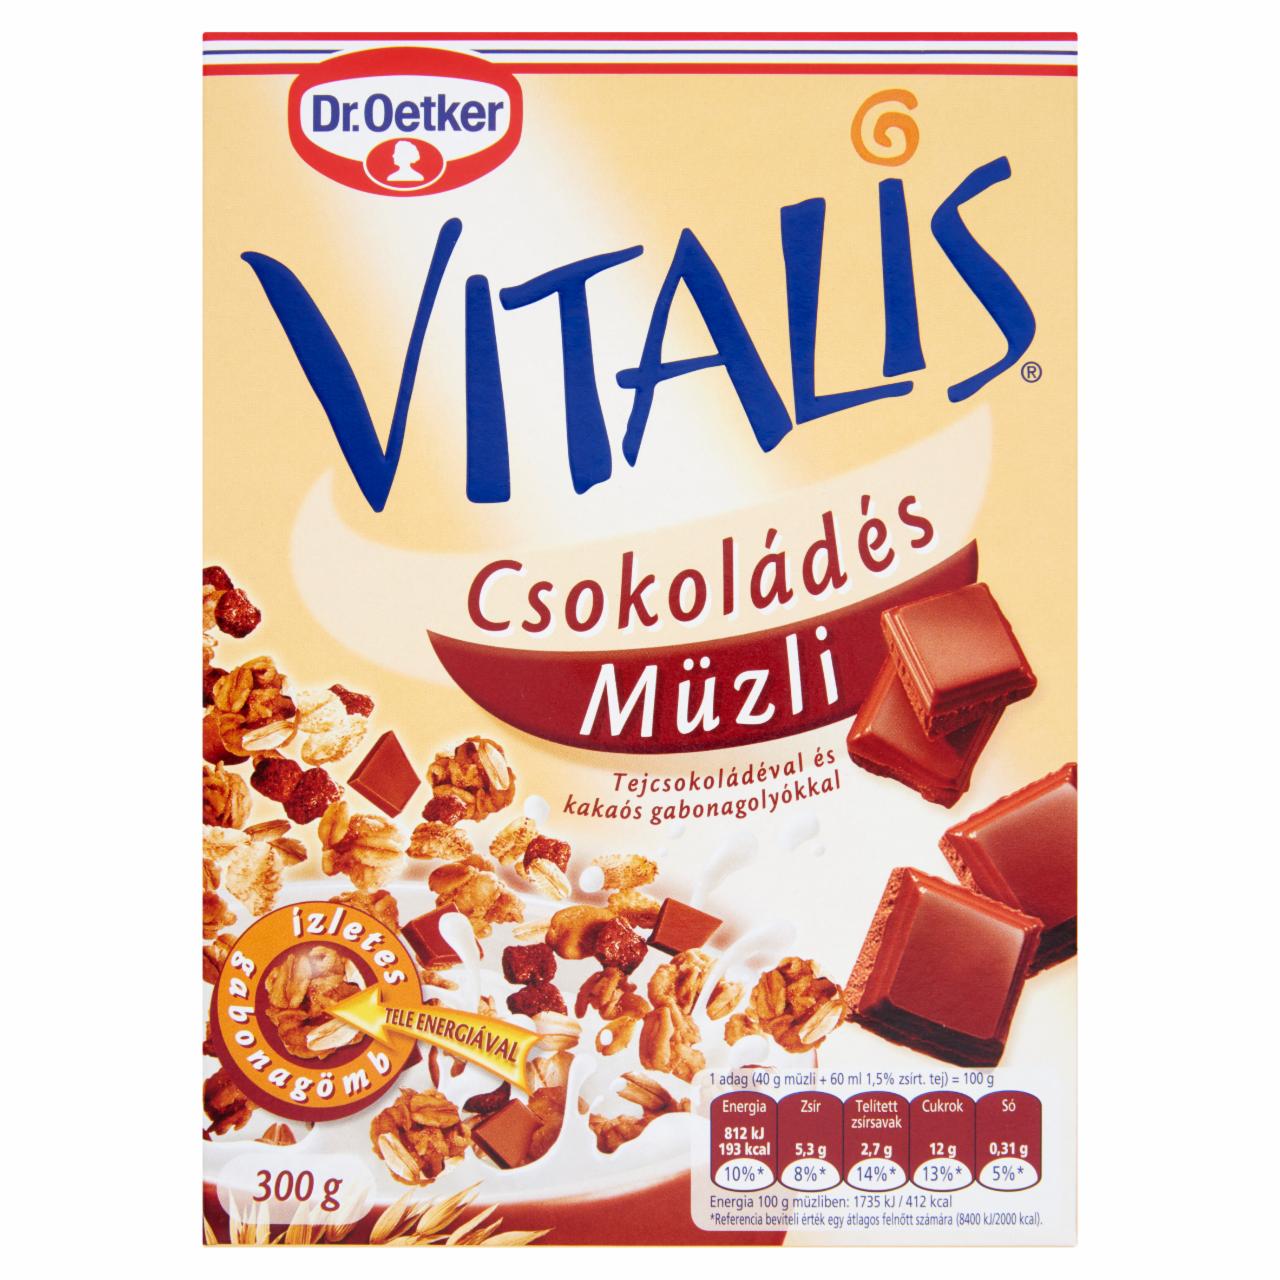 Képek - Dr. Oetker Vitalis csokoládés müzli tejcsokoládéval és kakaós gabonagolyókkal 300 g